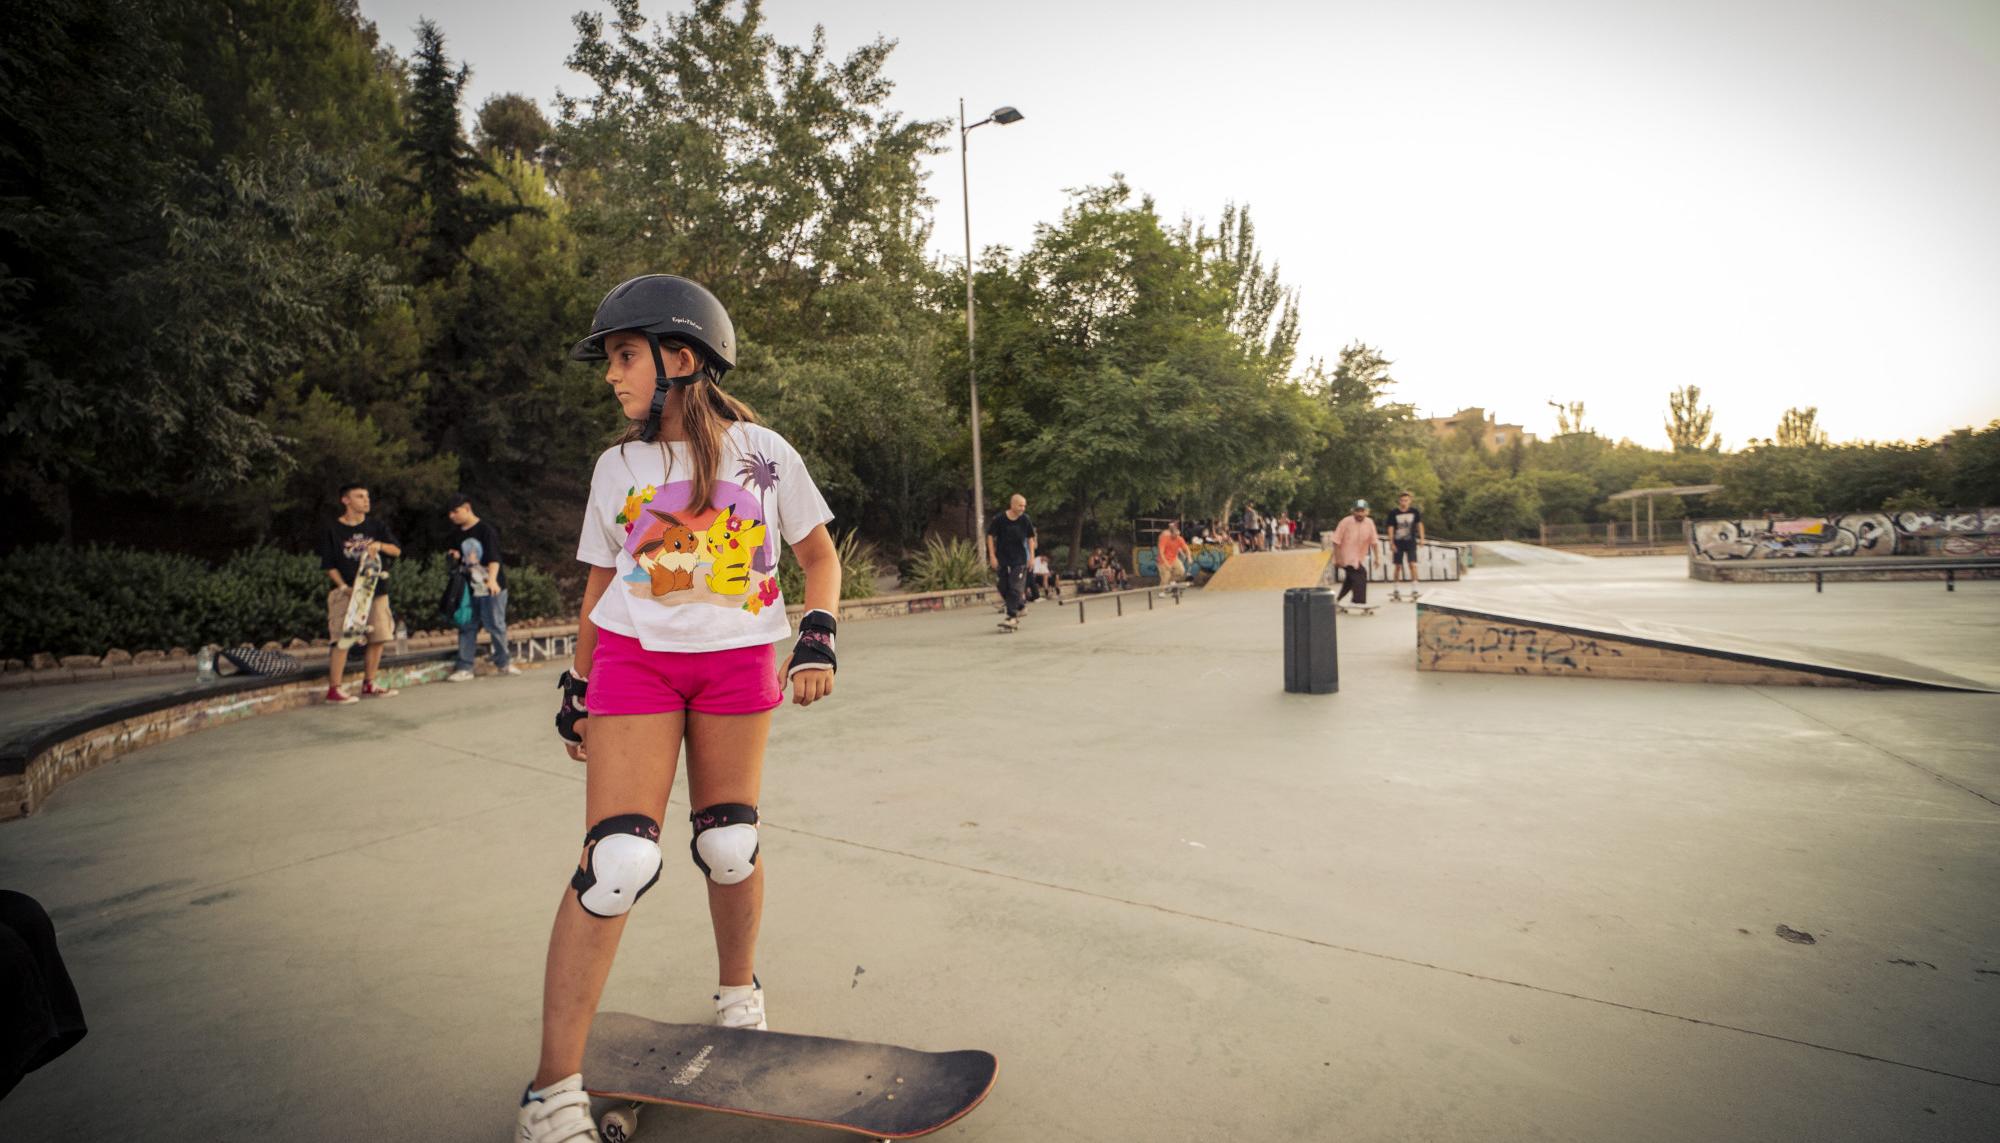 Skaters en el skatepark Bola de Oro, Granada - 7